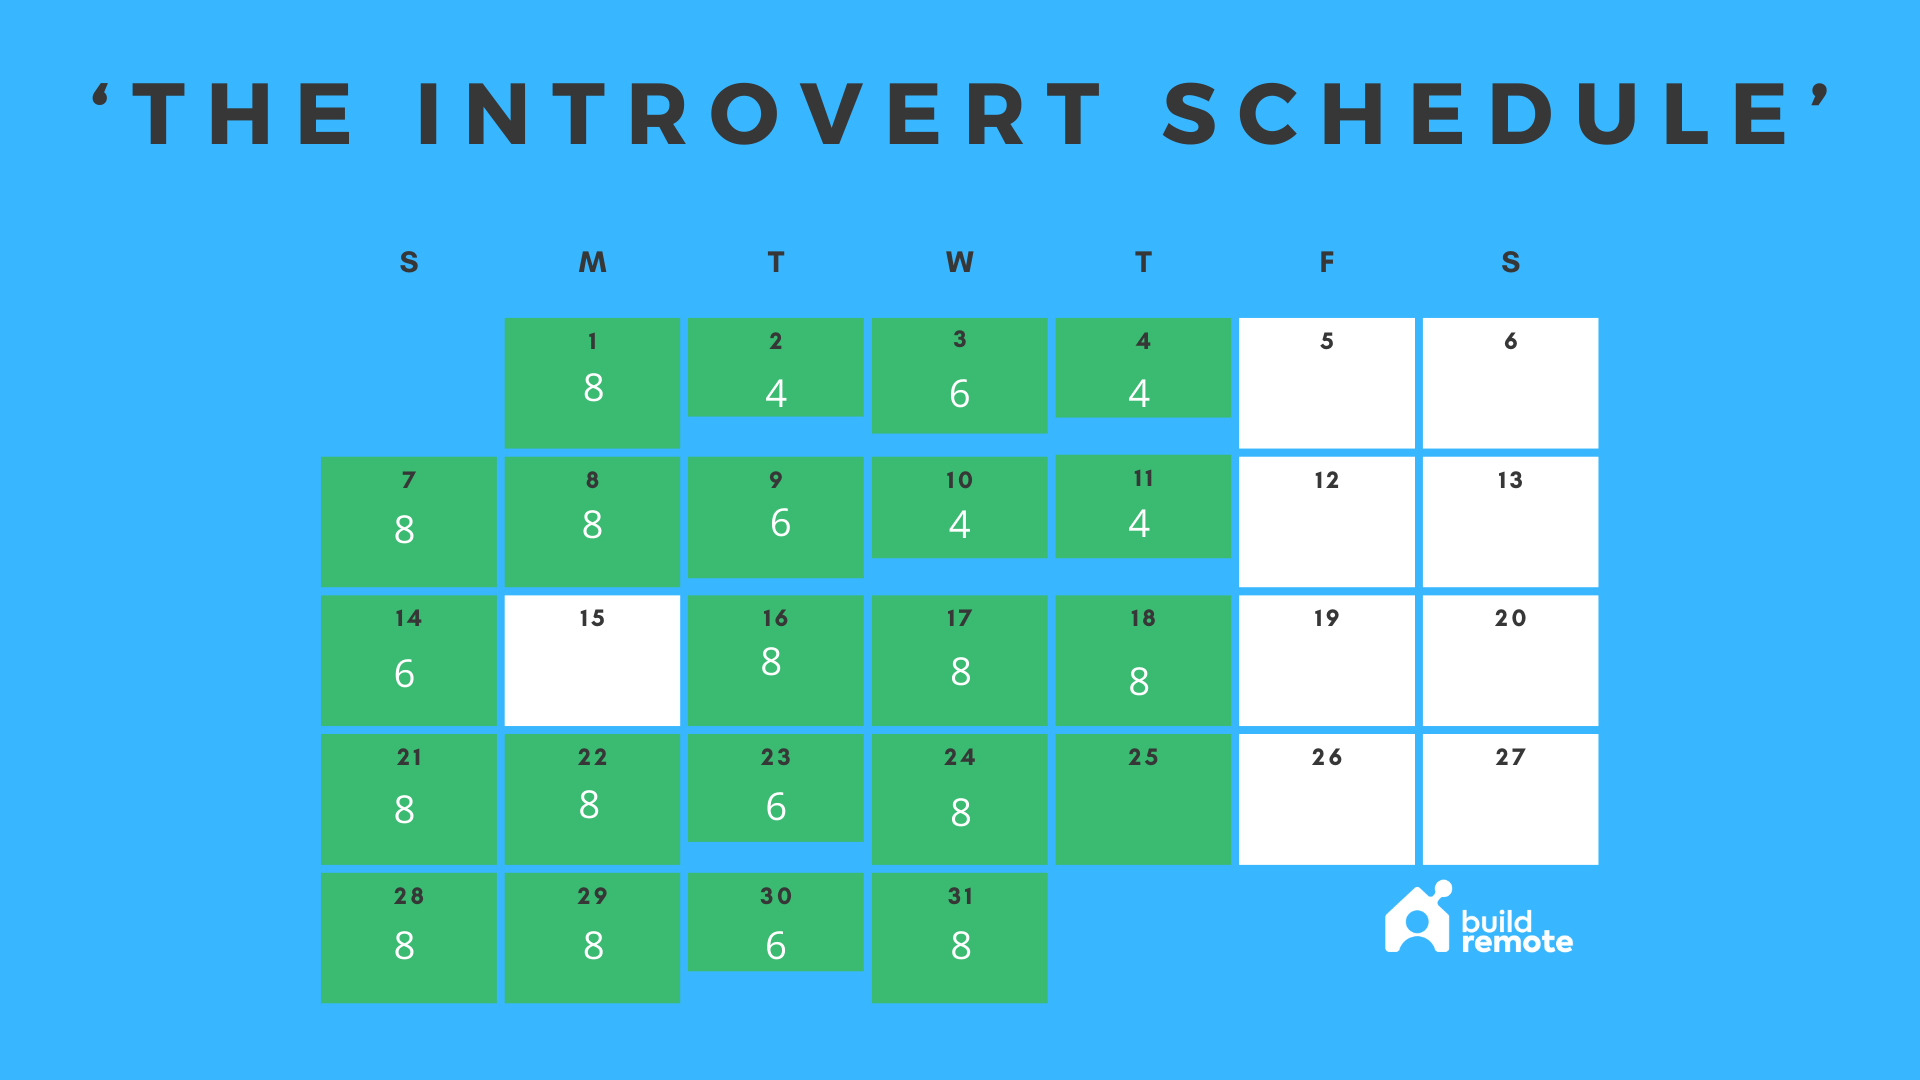 Introvert work schedule